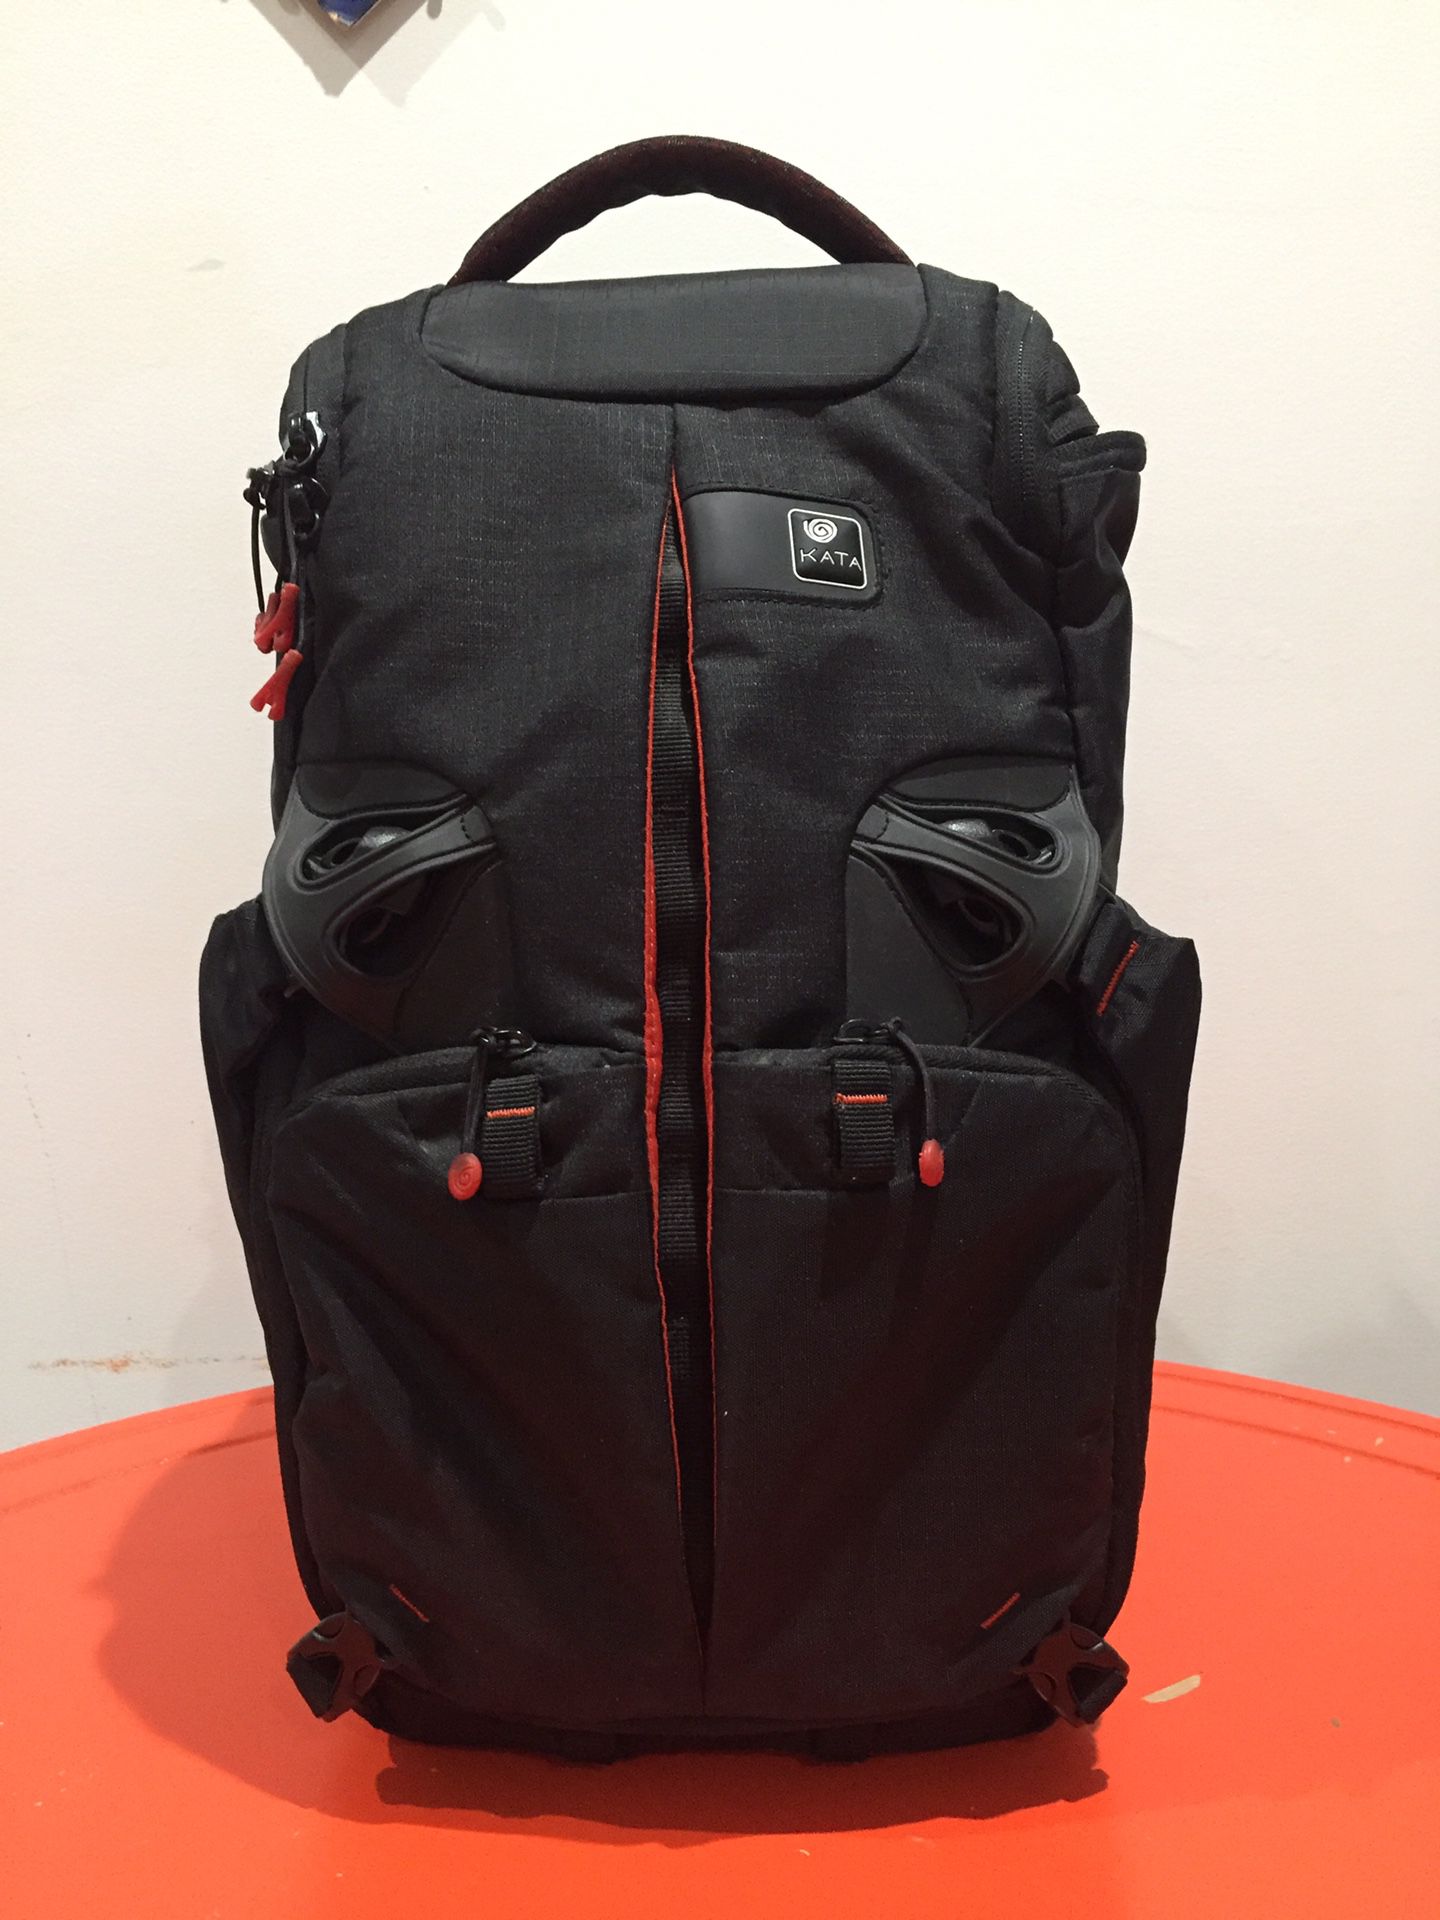 Kata 3n1 25pl photography camera dslr backpack sling bag film